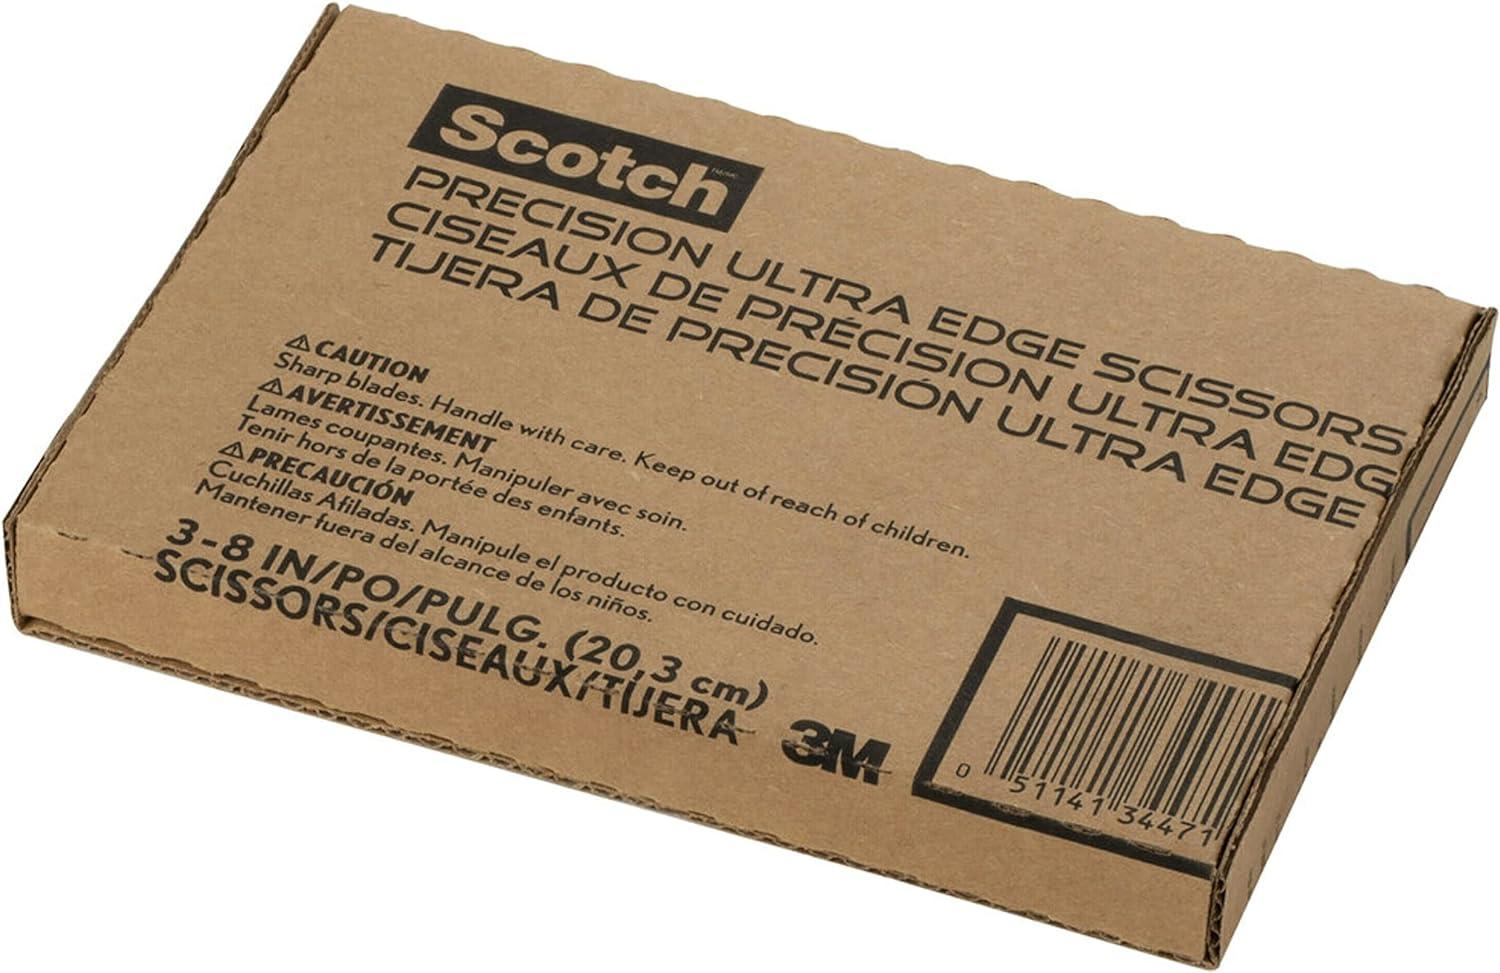 Scotch Brand Precision Ultra Edge Scissors 8 Inch 3-Pack (1458